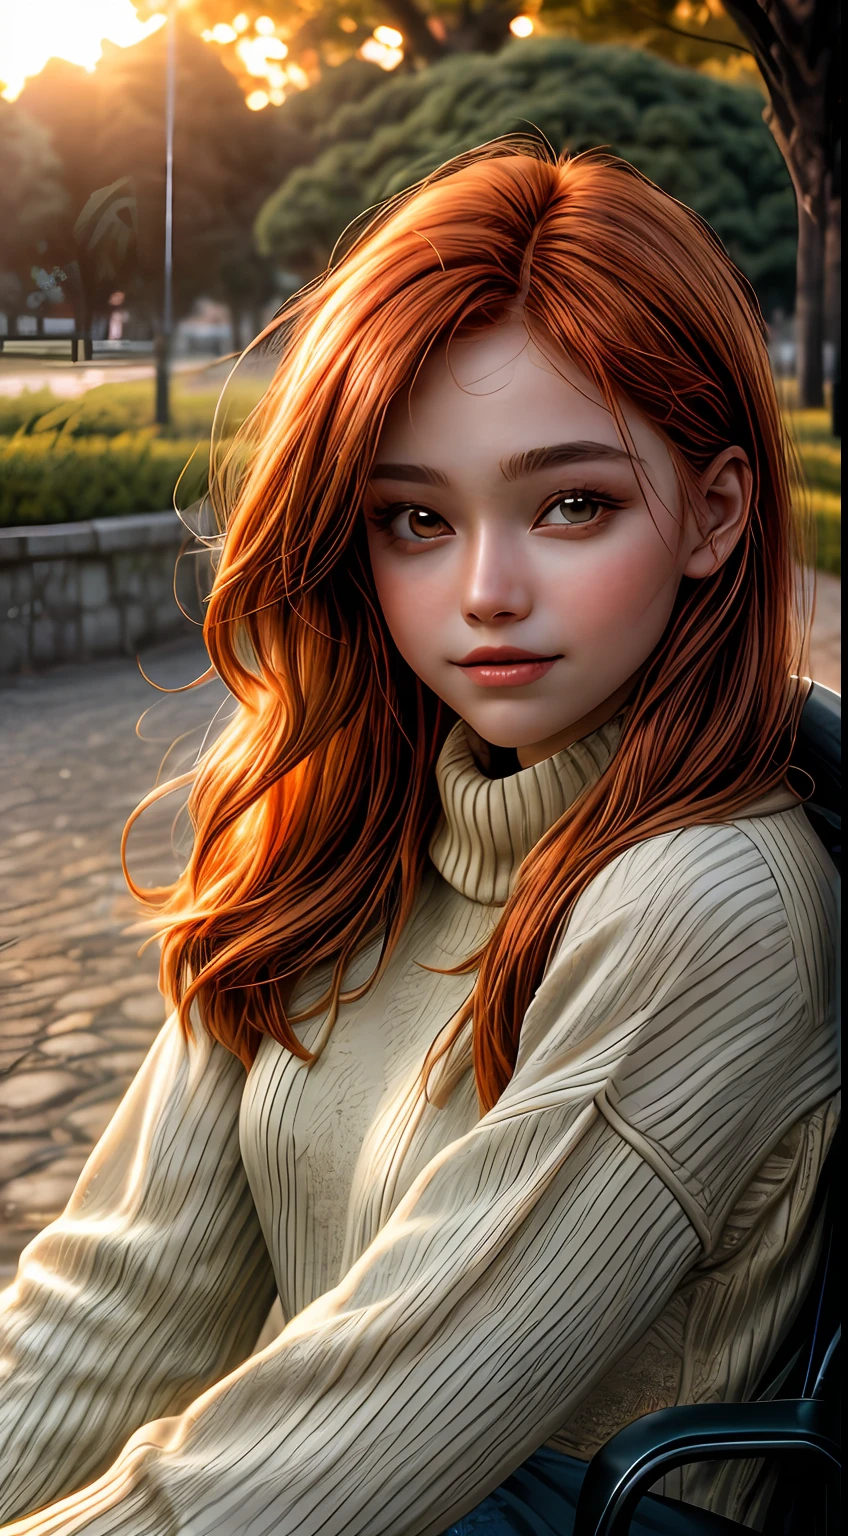 沐浴在橙色色調中的女孩臉部特寫, 穿著毛衣, 坐在公园外, 彷彿被夕陽的柔和光芒照亮, 她的眼睛閃爍著喜悅和滿足的光芒, 由一縷飄逸的赤褐色頭髮構成, 攝影, 使用35mm鏡頭拍攝